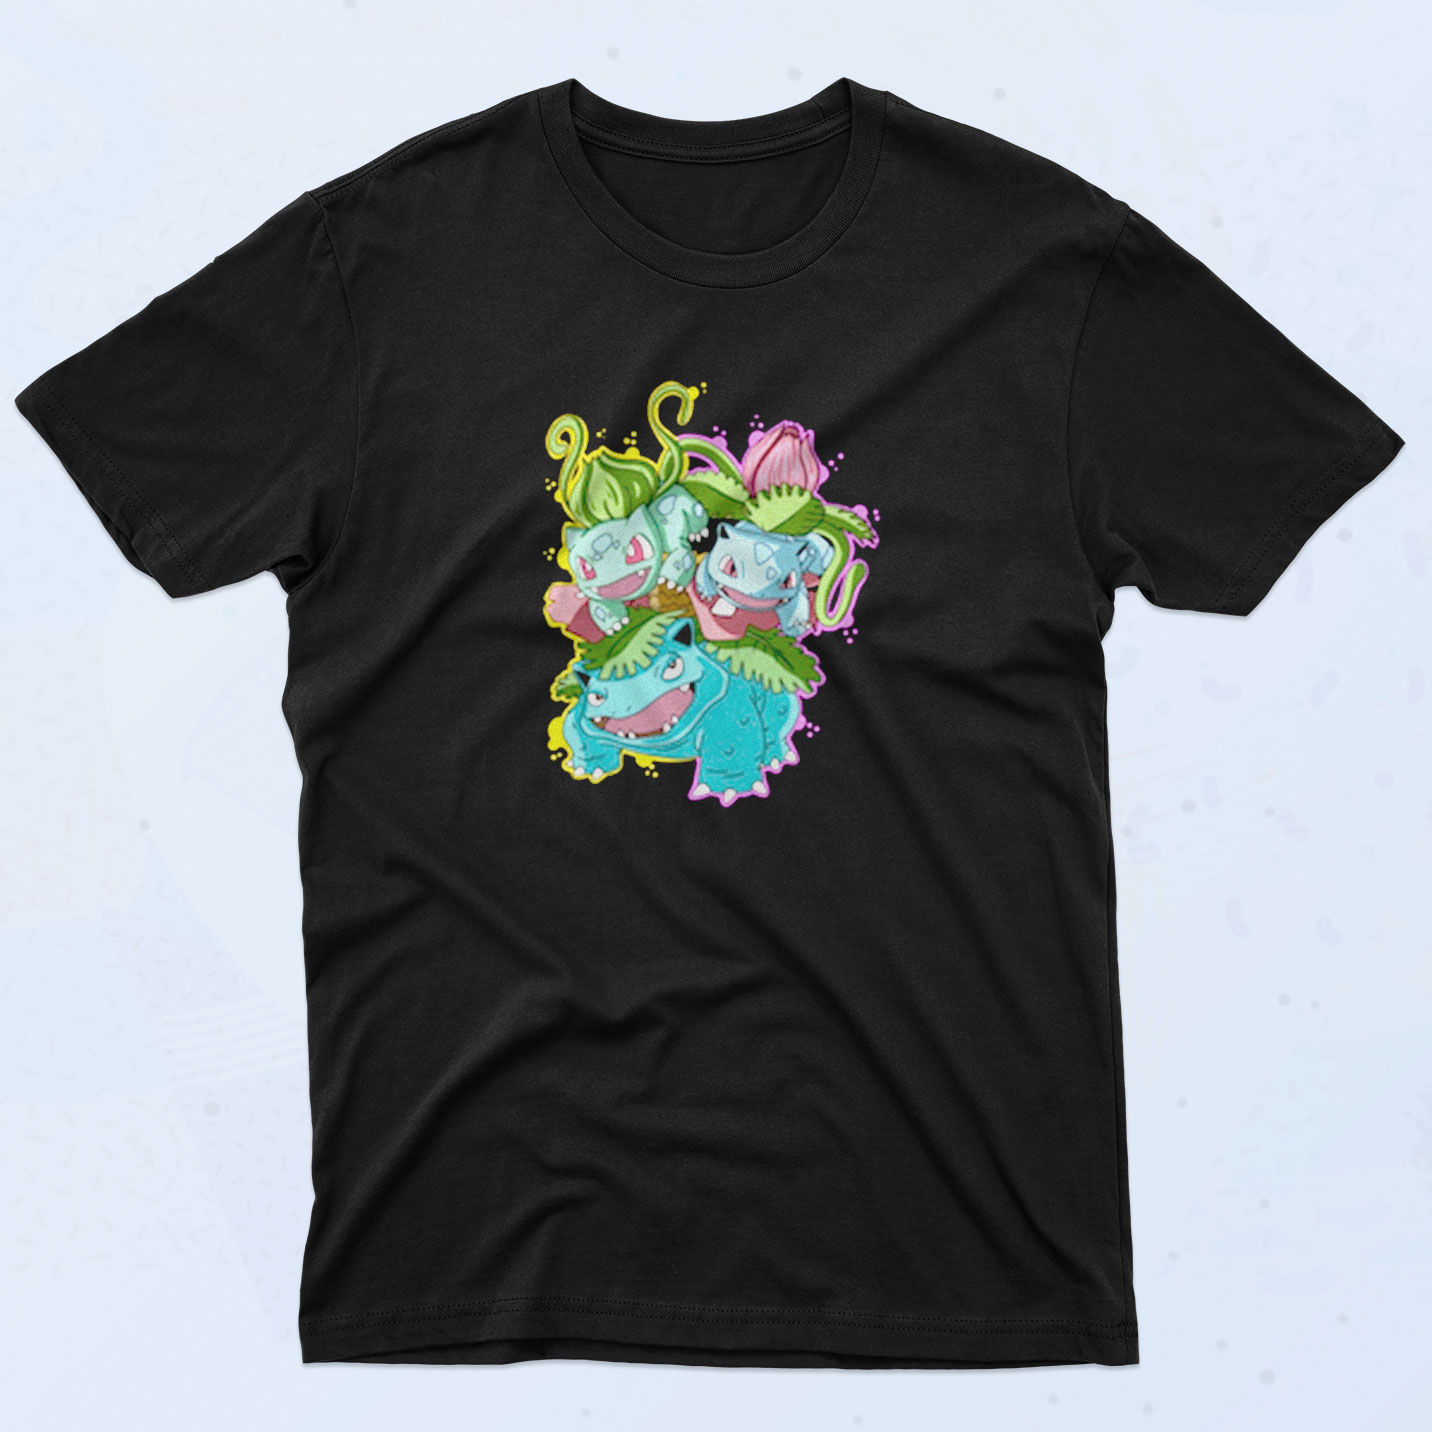 Bulbasaur Evolution Pokemon 90s T Shirt Idea - 90sclothes.com